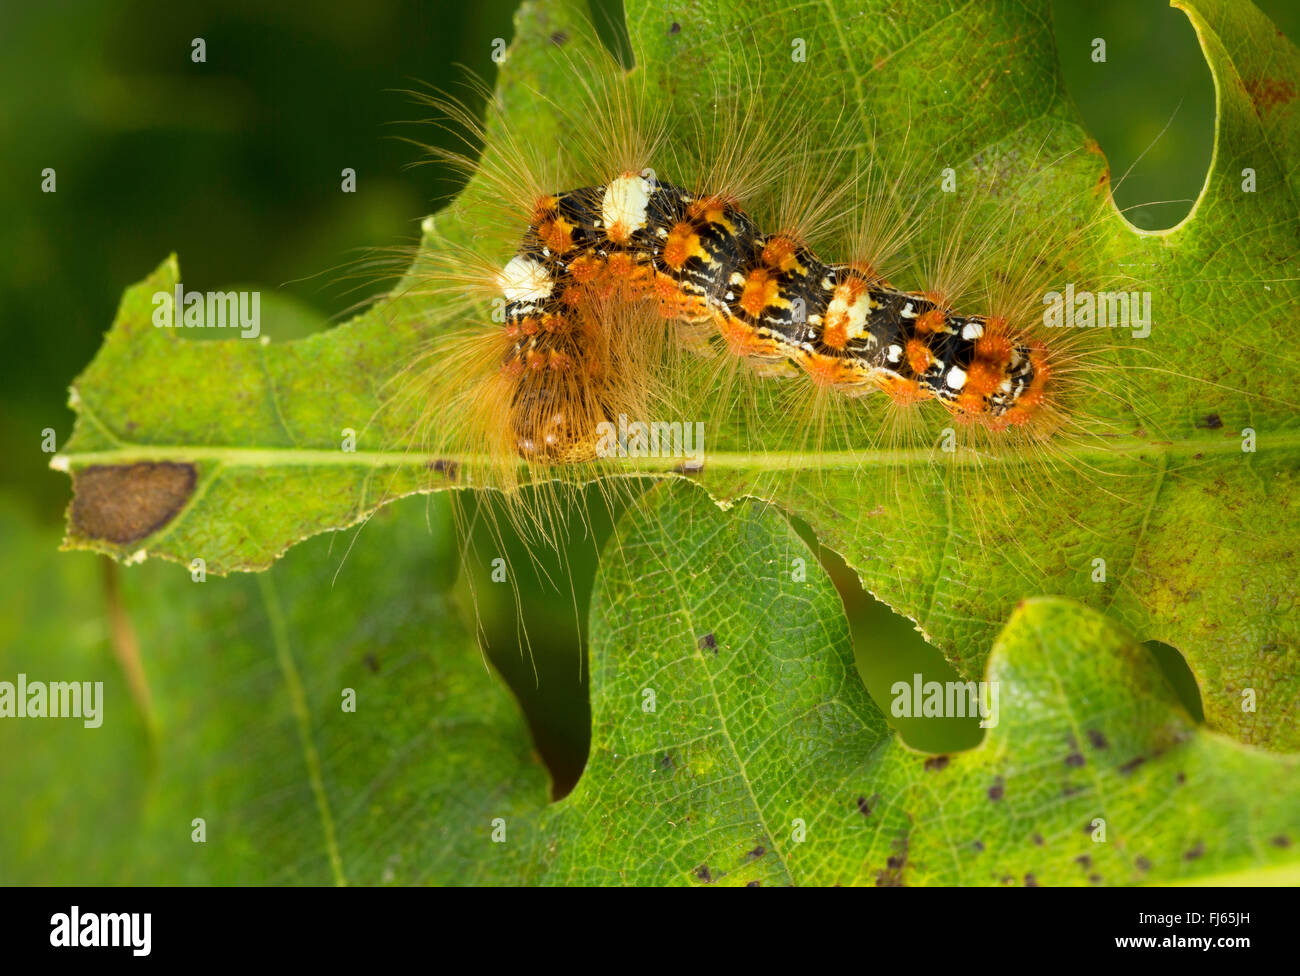 Los escasos Merveille du jour (Moma alpium, Daseoacheta alpium, Diphthera alpium), Caterpillar con pelos de comer en una hoja de roble, Alemania Foto de stock